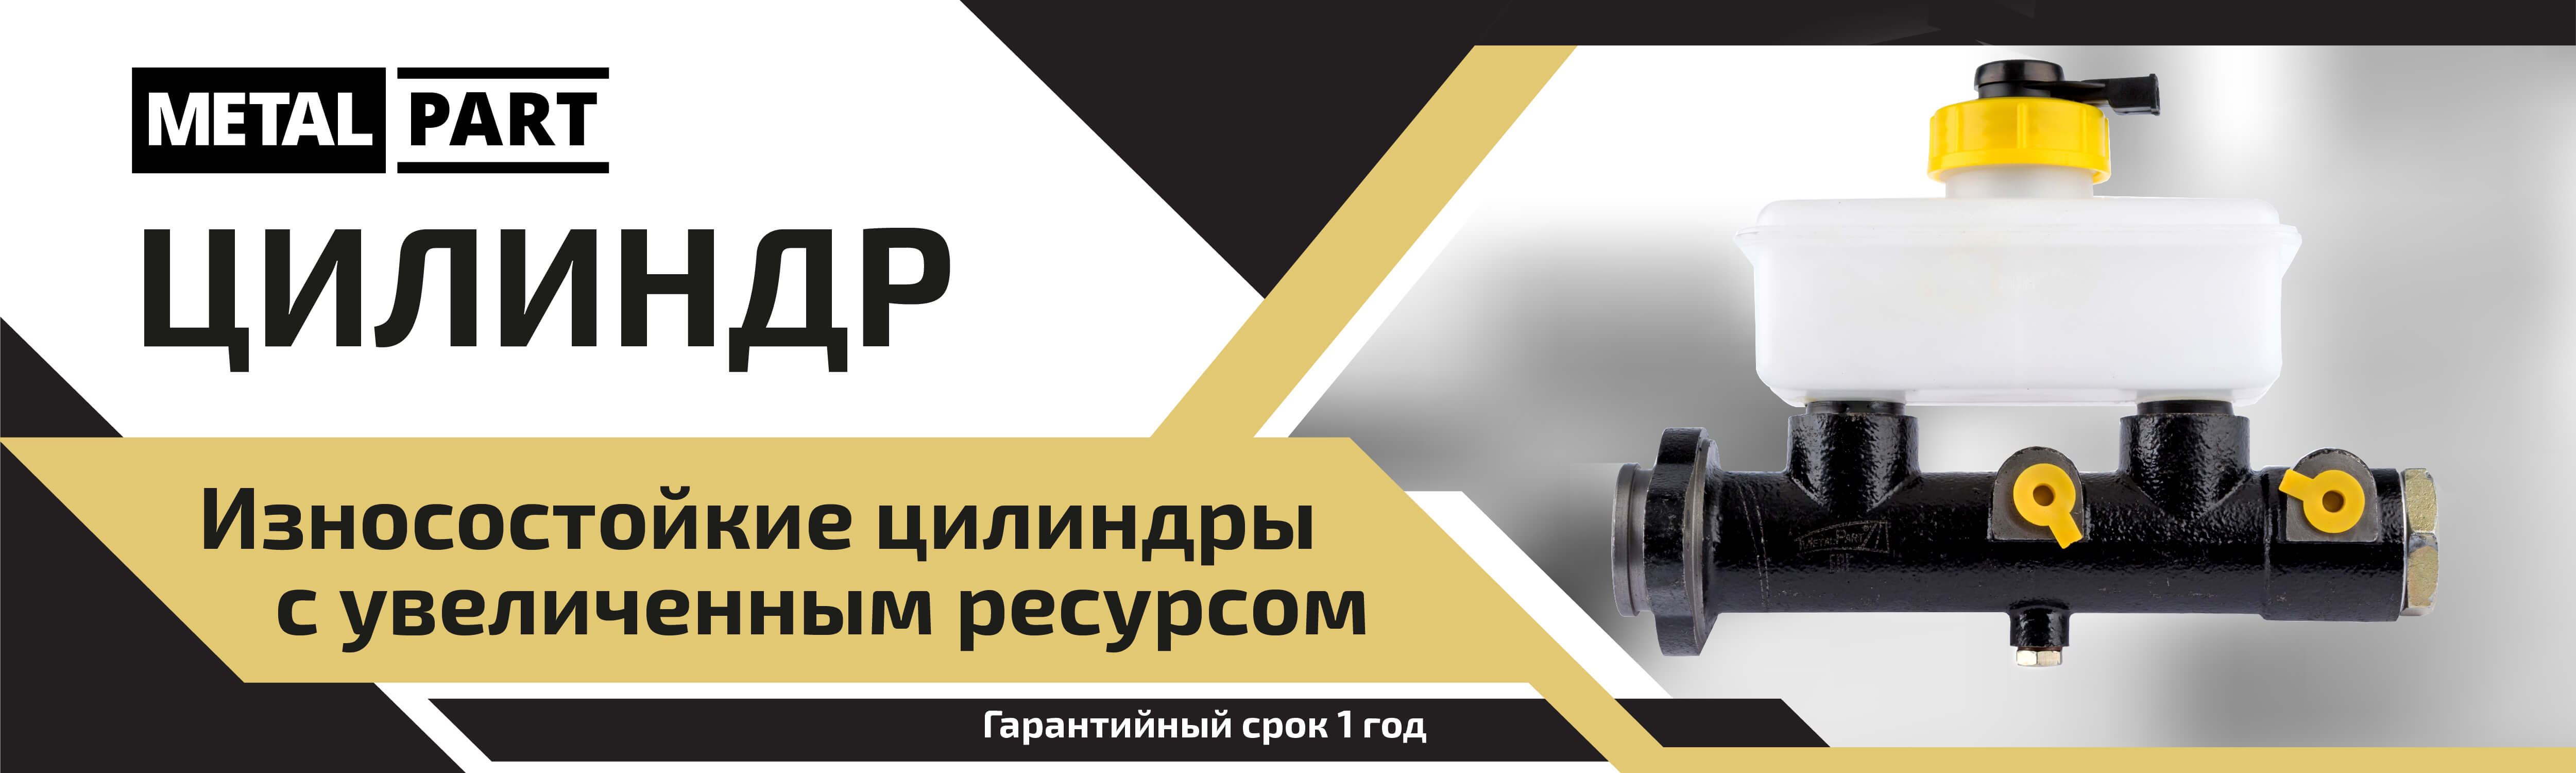 Цилиндры выключения сцепления для ГАЗ и УАЗ ⚙ — купить в Санкт-Петербурге, цены в Metalpart.ru